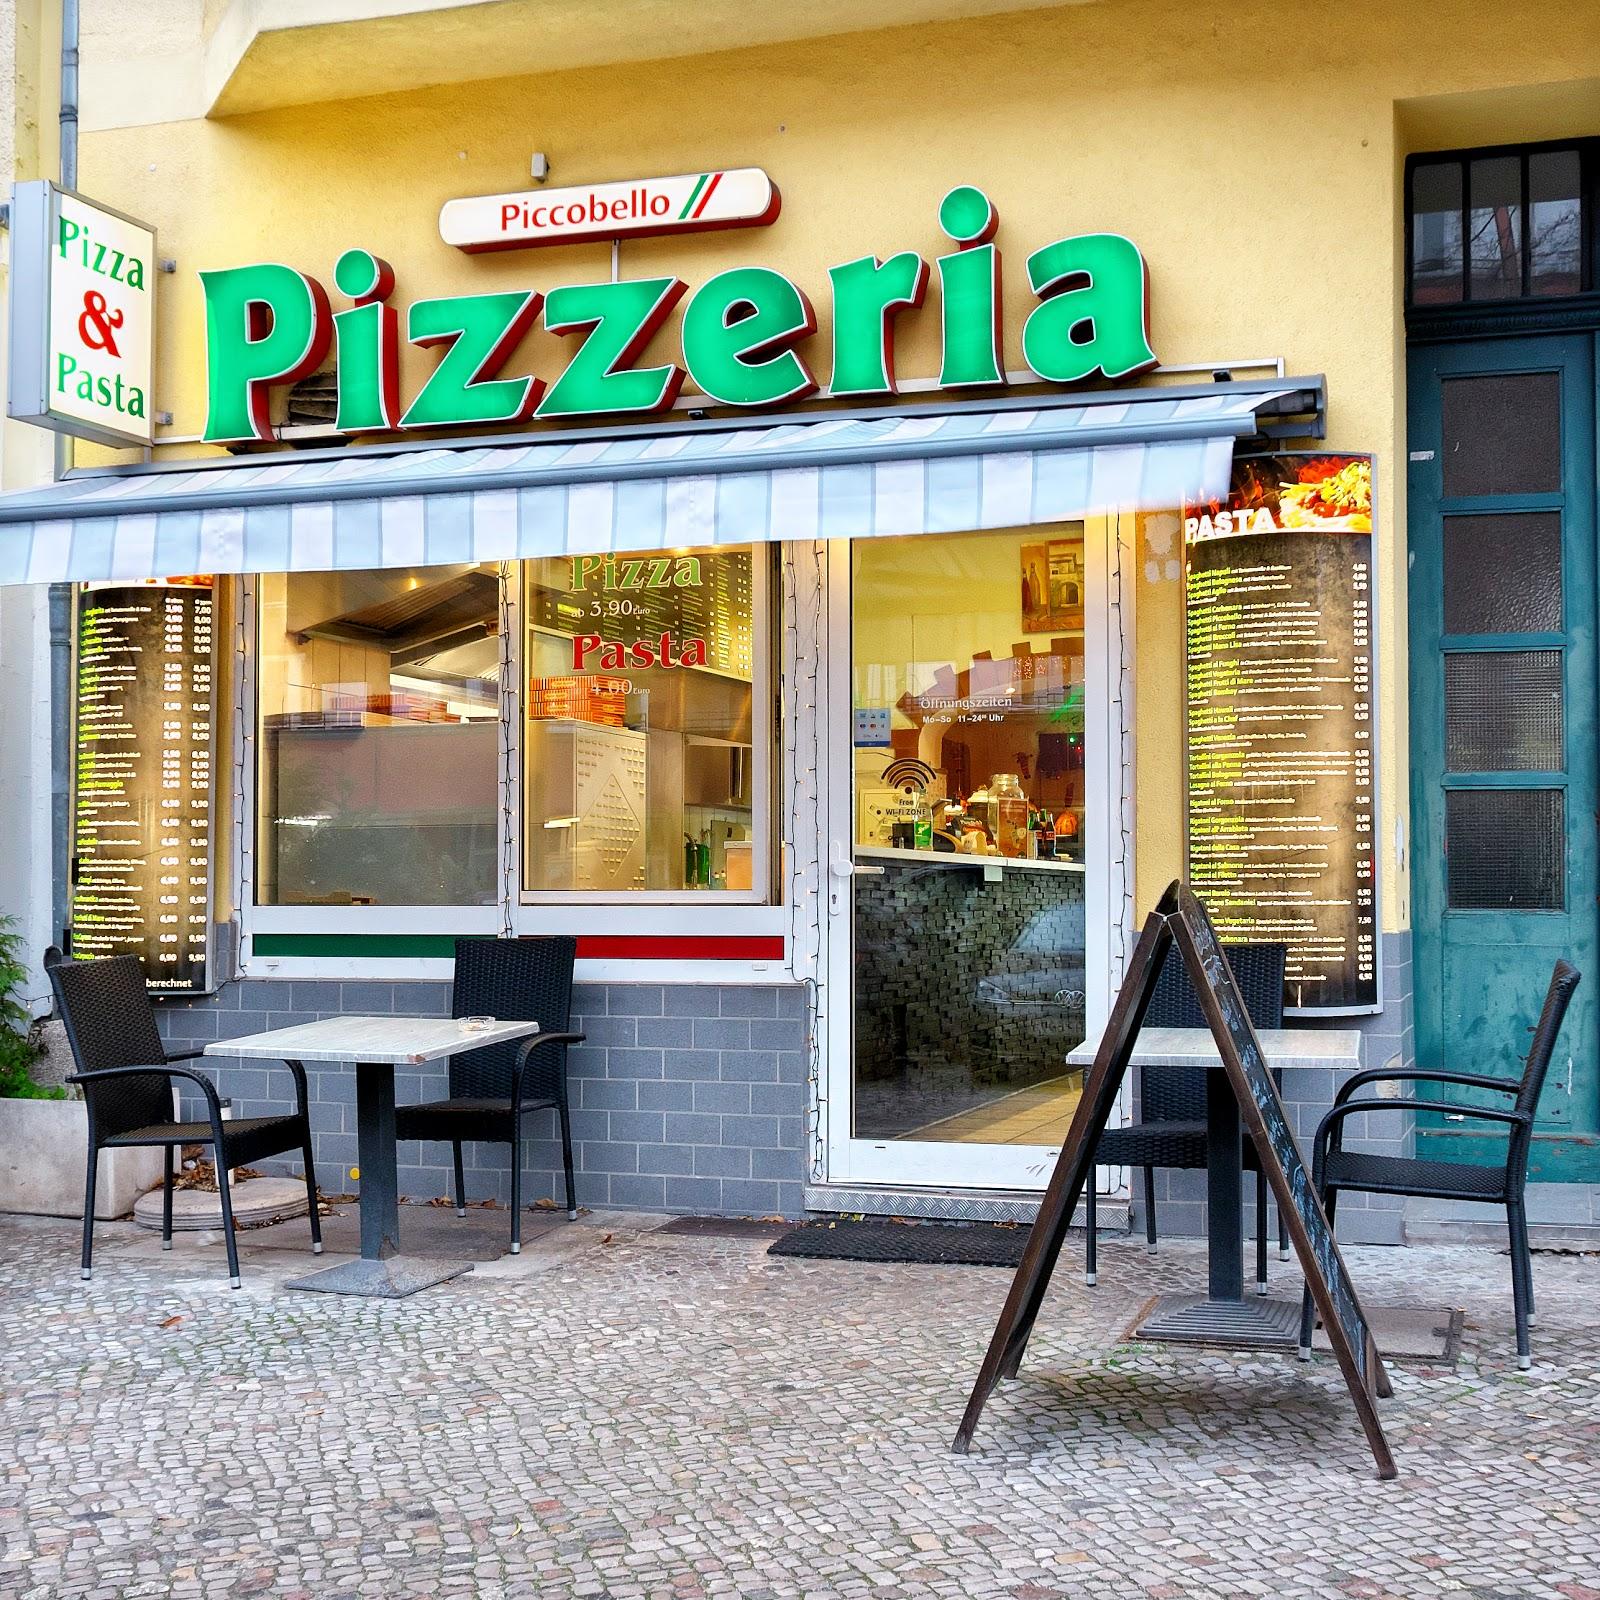 Restaurant "Pizzeria Piccobello" in Berlin